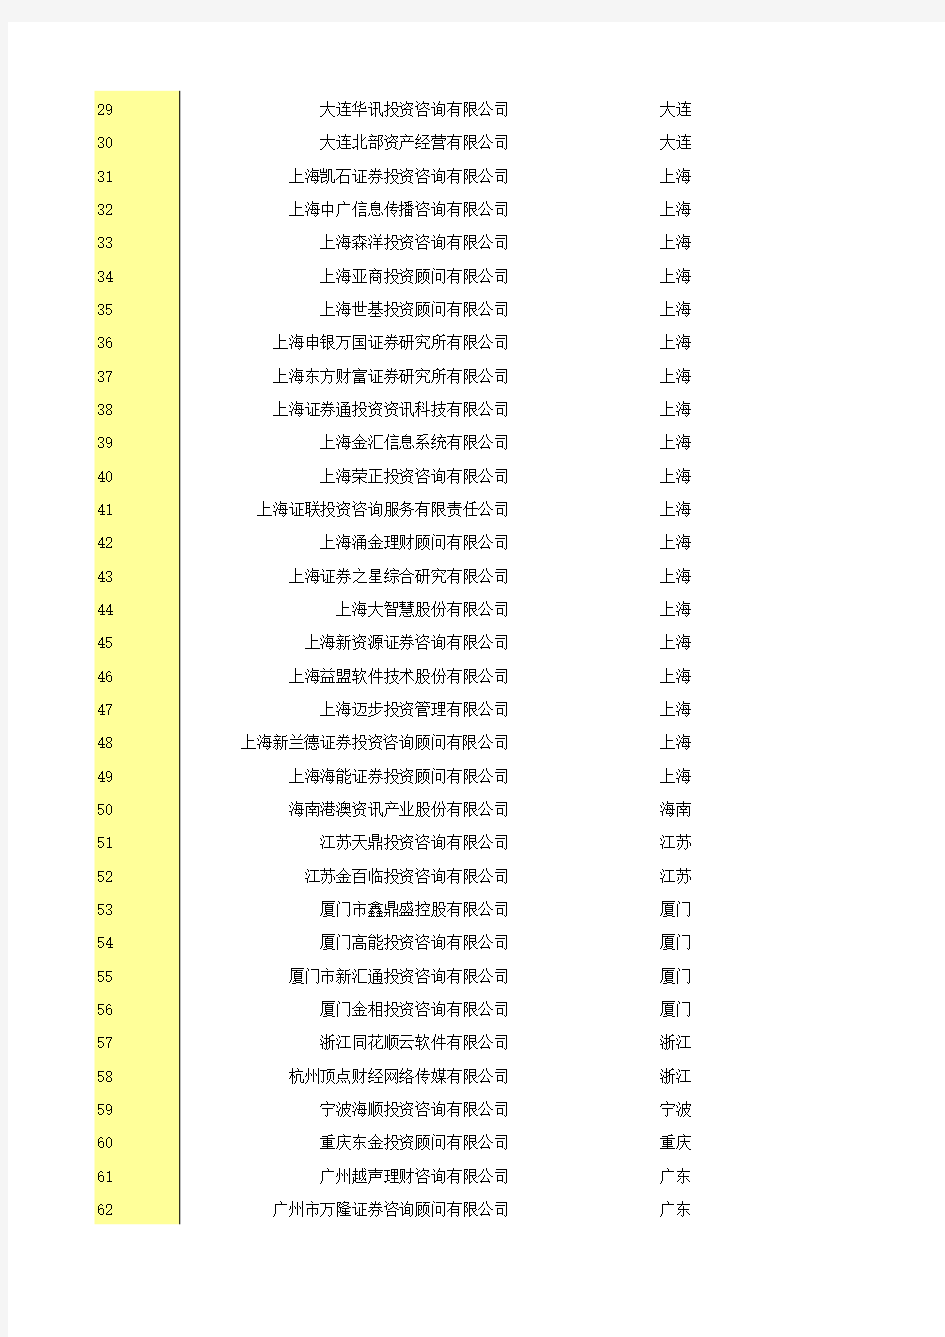 中国证券期货统计年鉴2014：8-28  2013年证券投资咨询机构名录